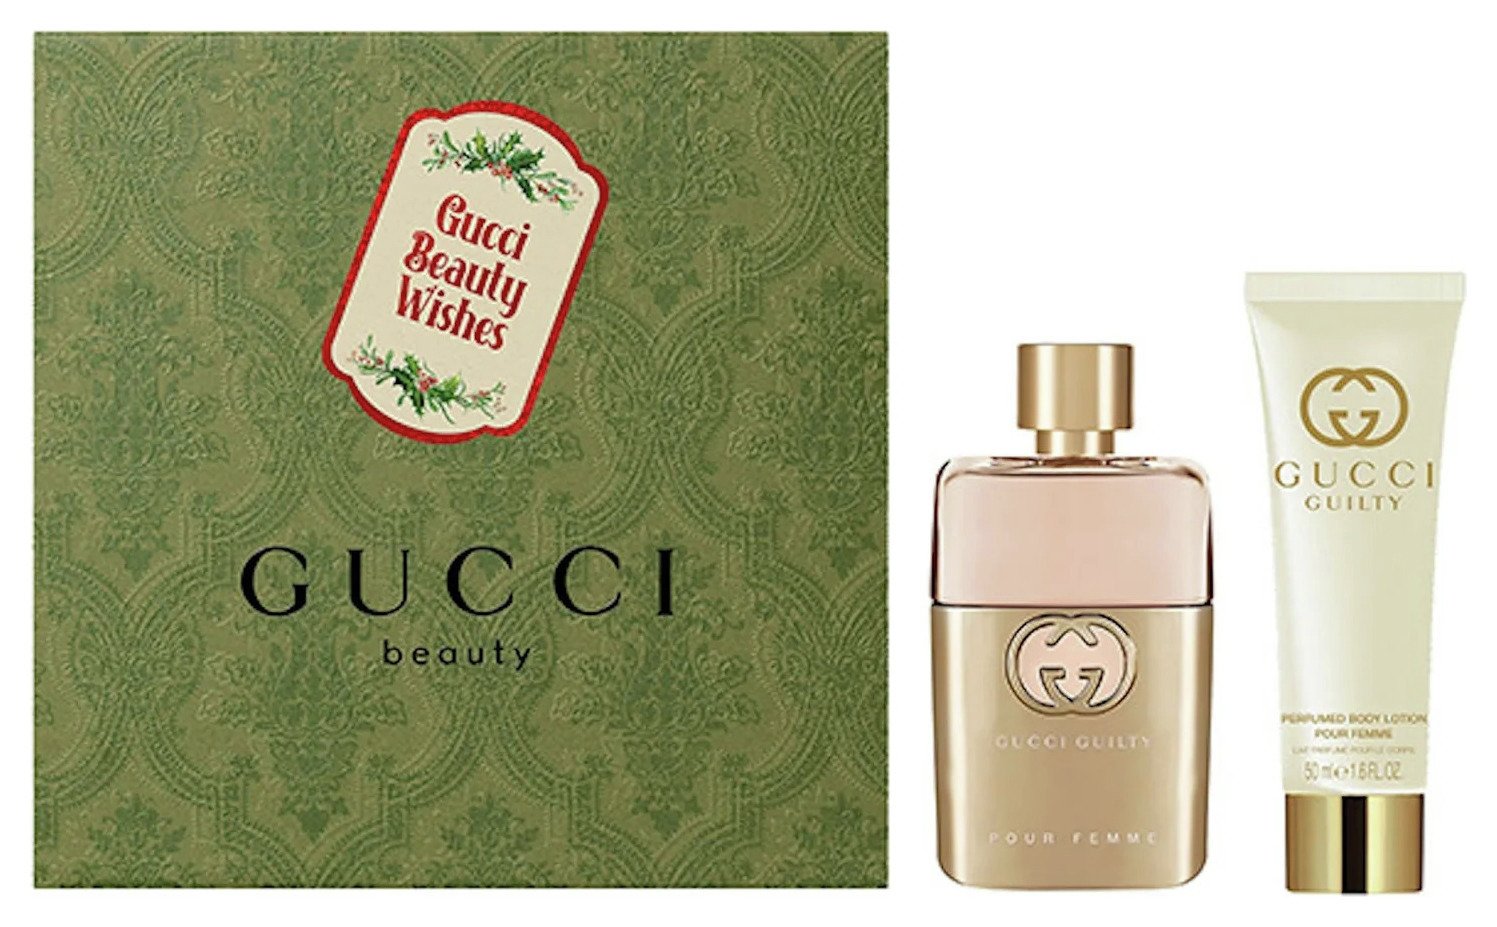 Gucci Guilty Pour Femme 50ml Eau de Parfum Set